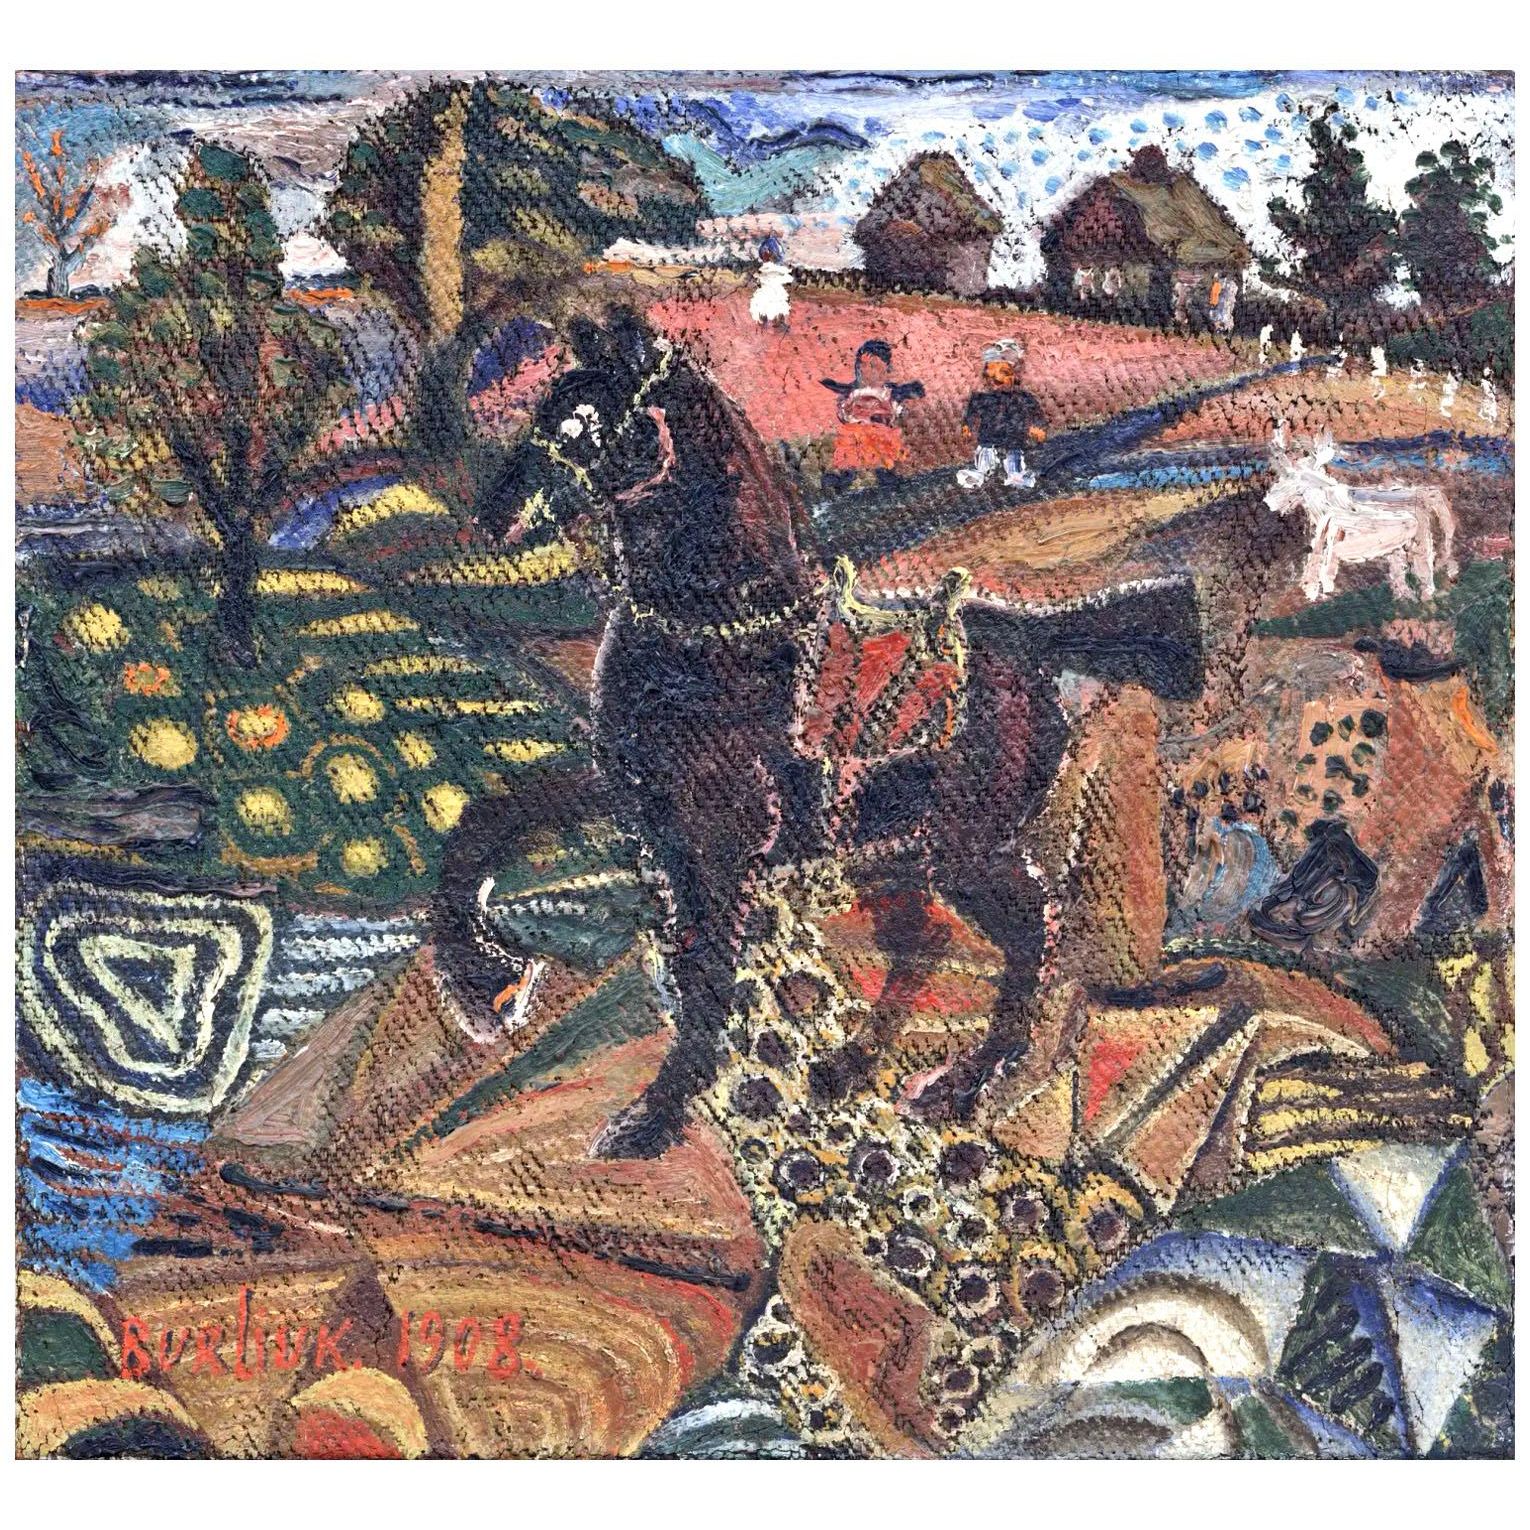 Давид Бурлюк. Лошадь. 1908. MoMA Нью-Йорк